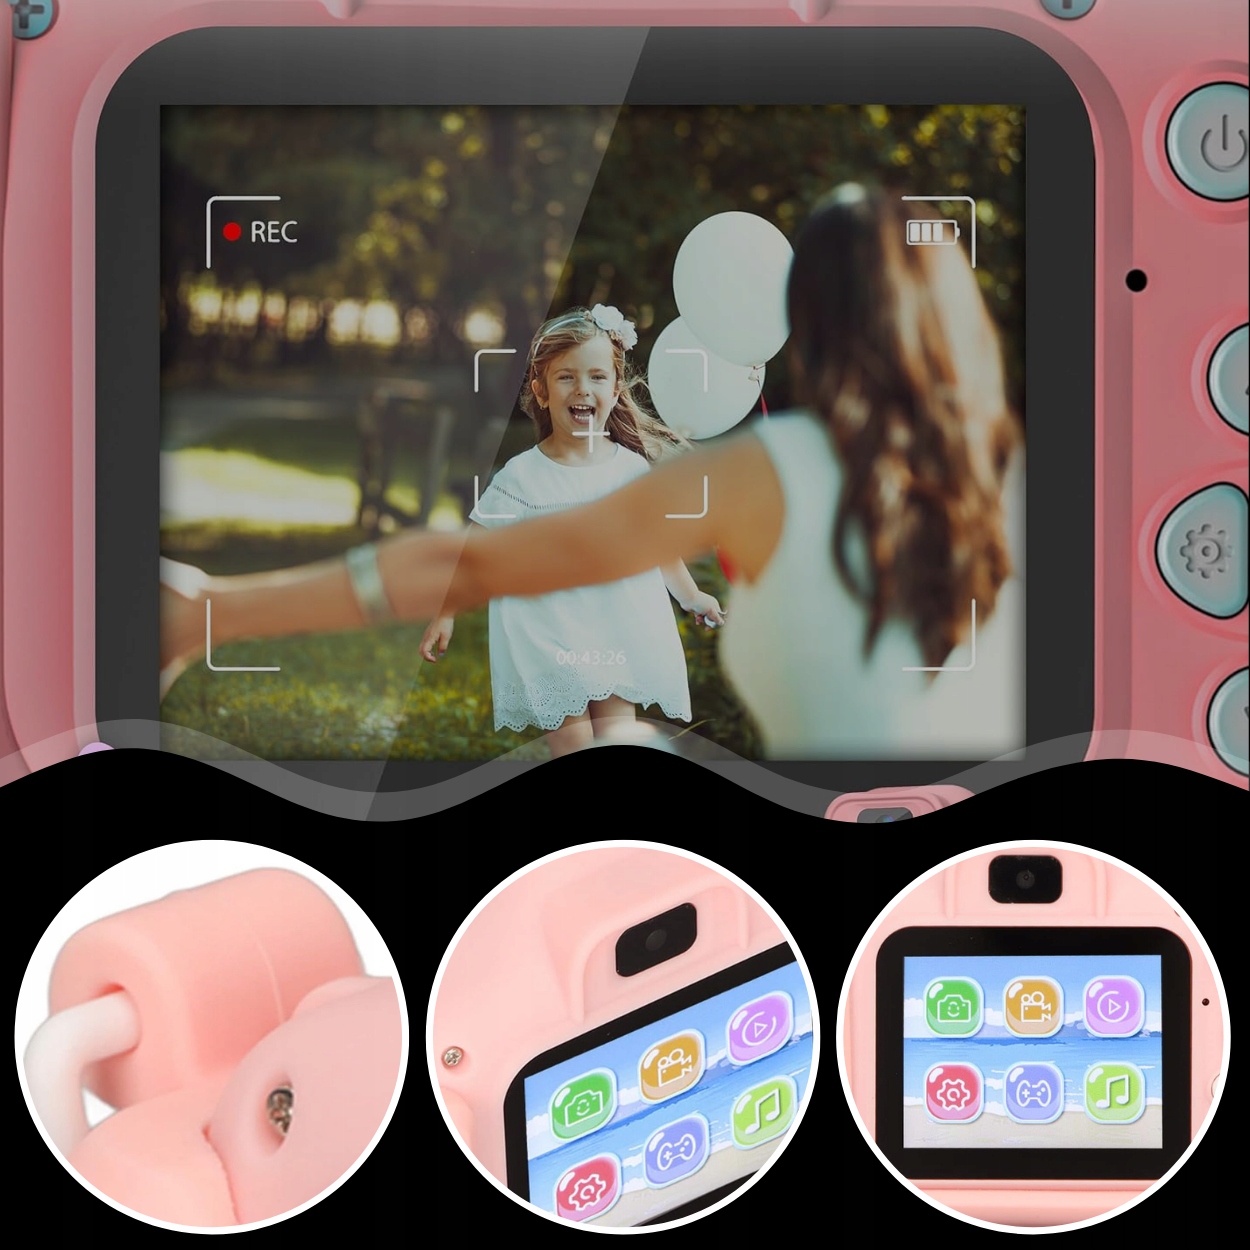 KAMERAT LAPSILLE FULL HD UNICORN PINK + CARD 32GB Malli Unicorn lasten kamera PINK 32GB